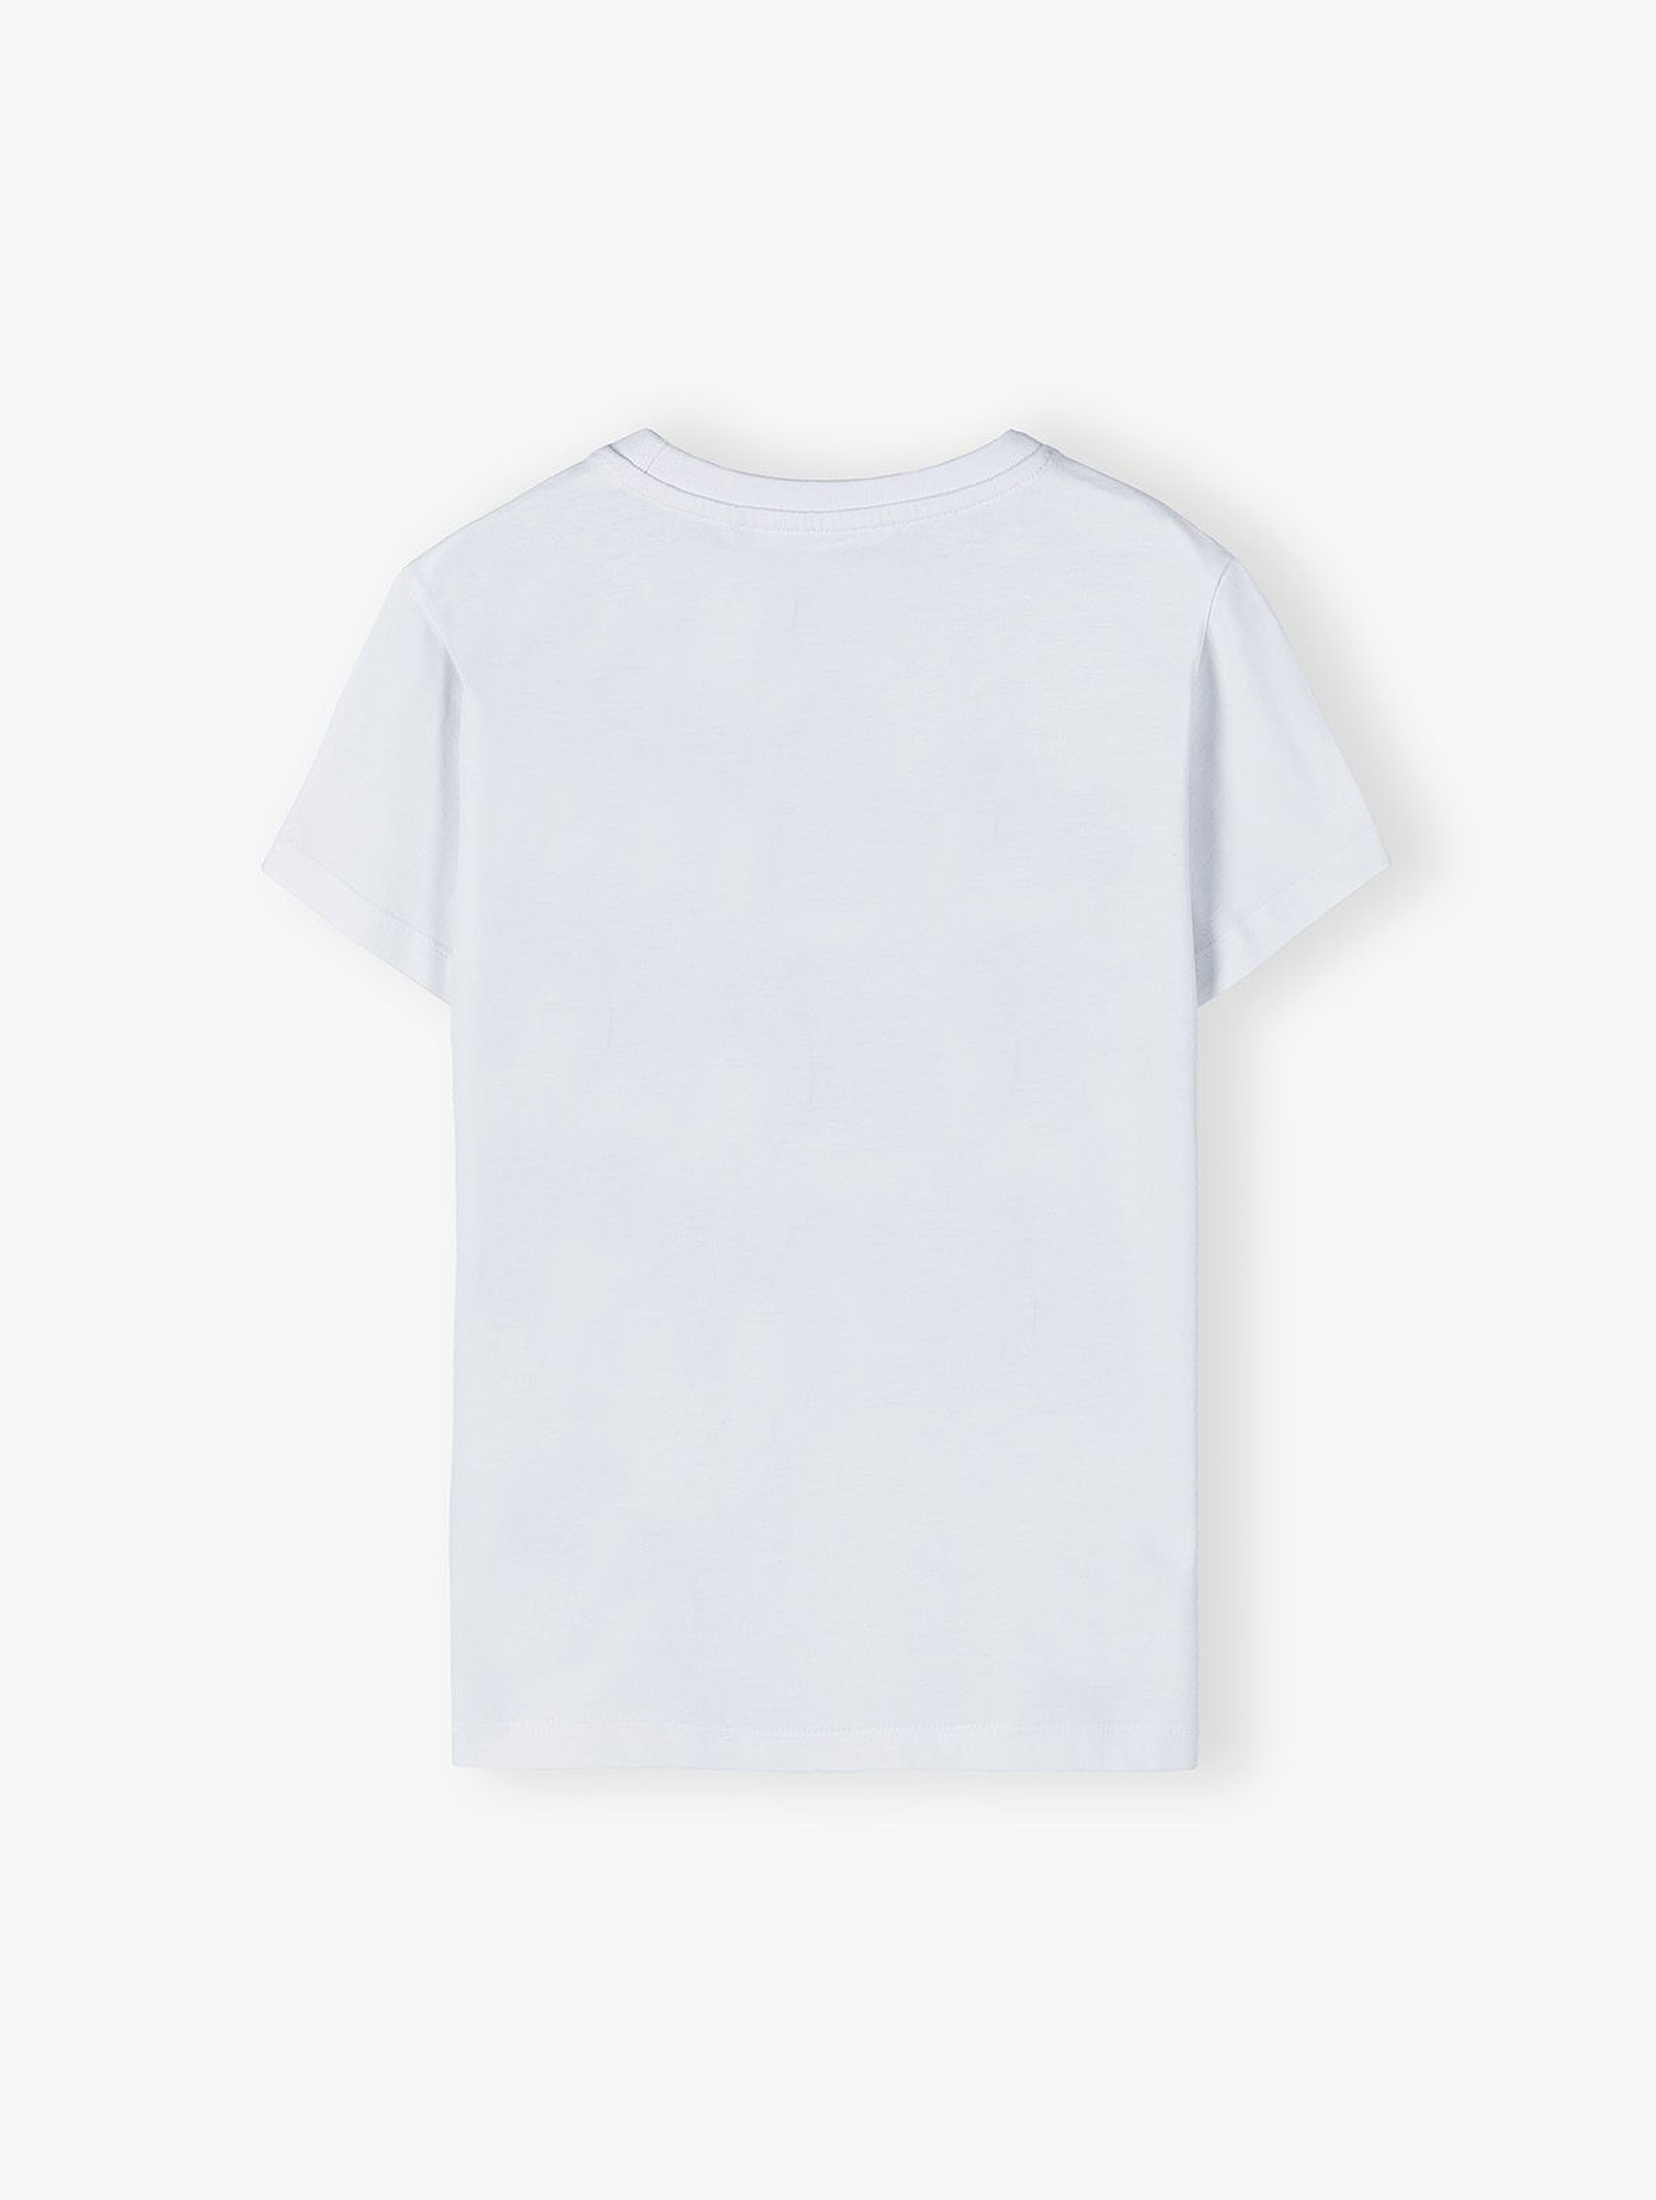 Bawełniany T-shirt dla chłopca - biały z wakacyjnym nadrukiem